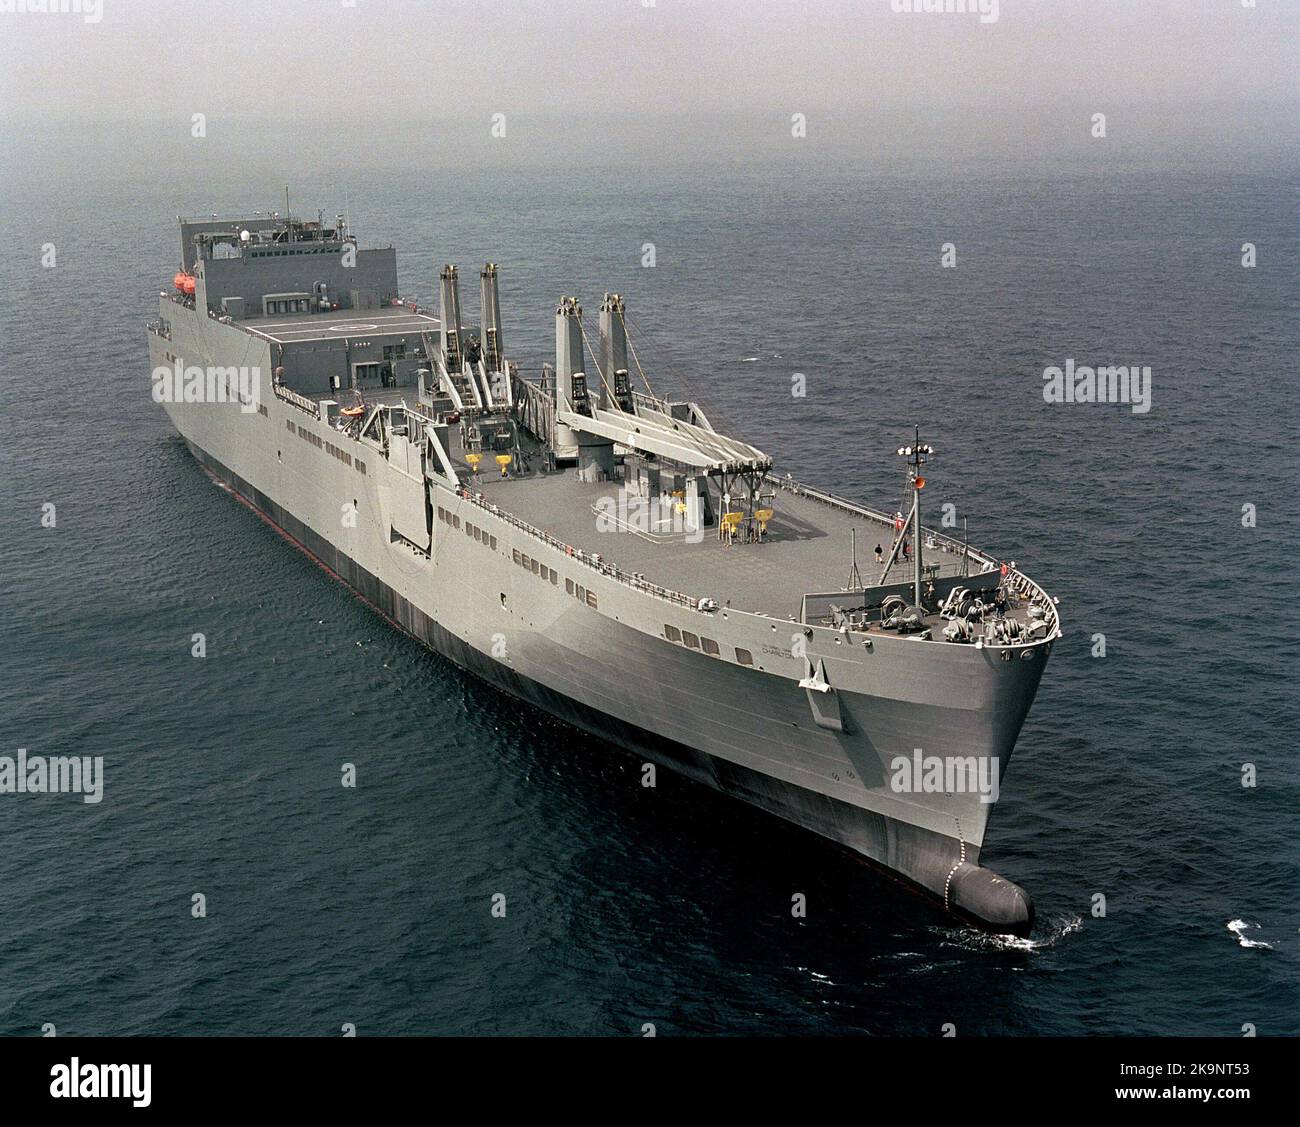 Military Sealift Command strategic heavy lift ship USNS CHARLTON (T-AKR 314) Stock Photo